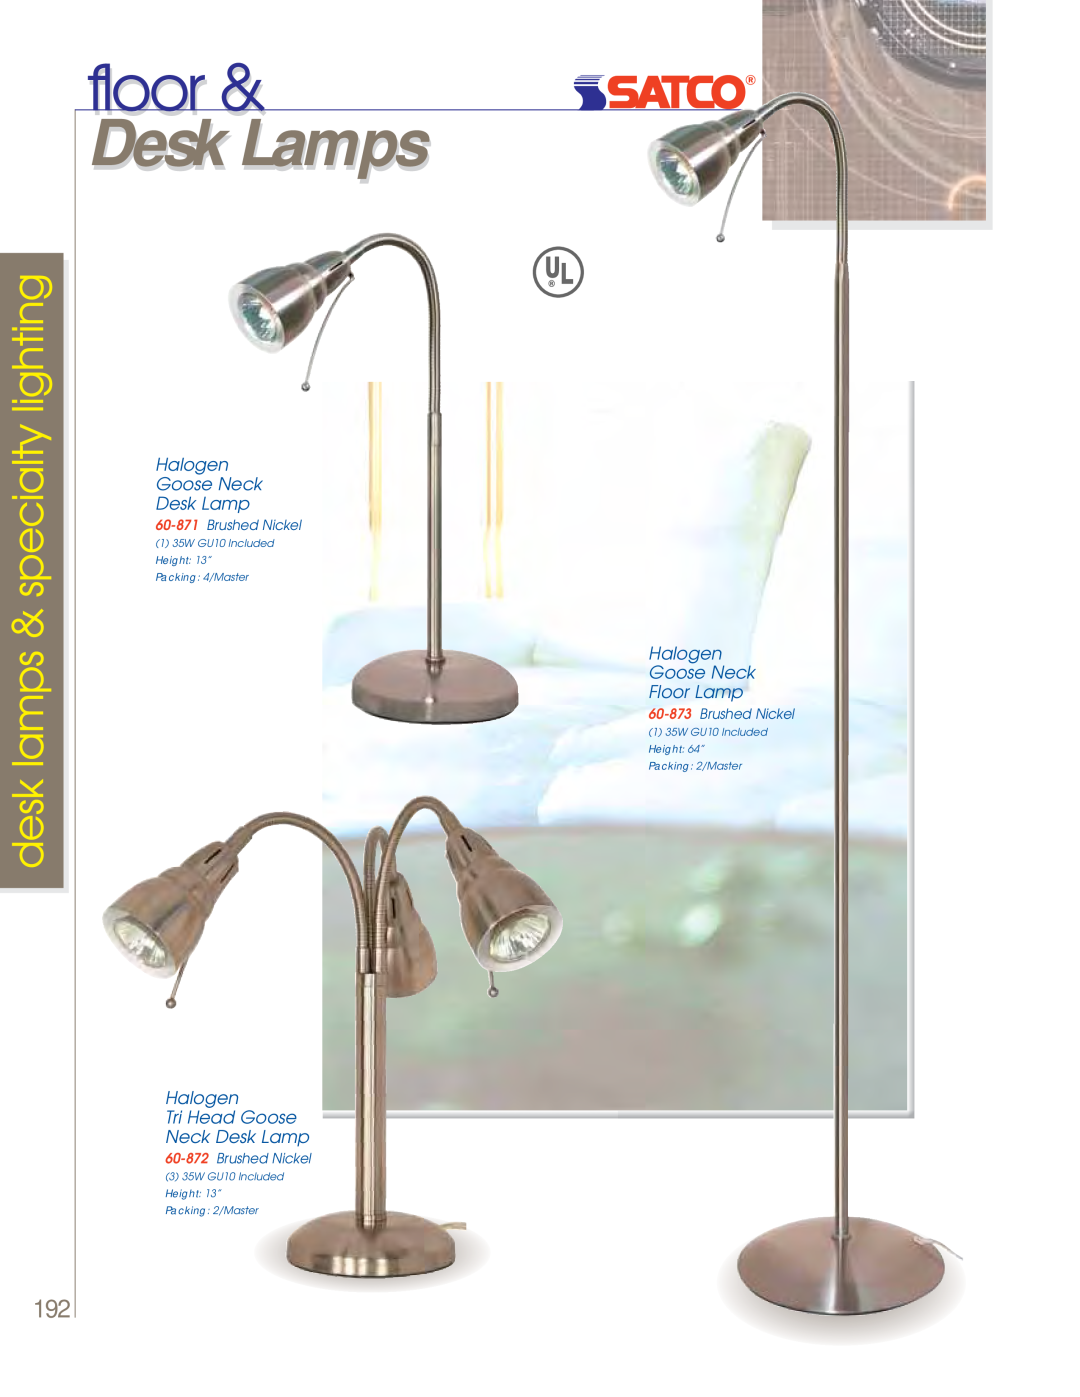 Satco Products 60-802 floor, Desk Lamps, desk lamps & specialty lighting, Halogen Goose Neck Desk Lamp, Brushed Nickel 